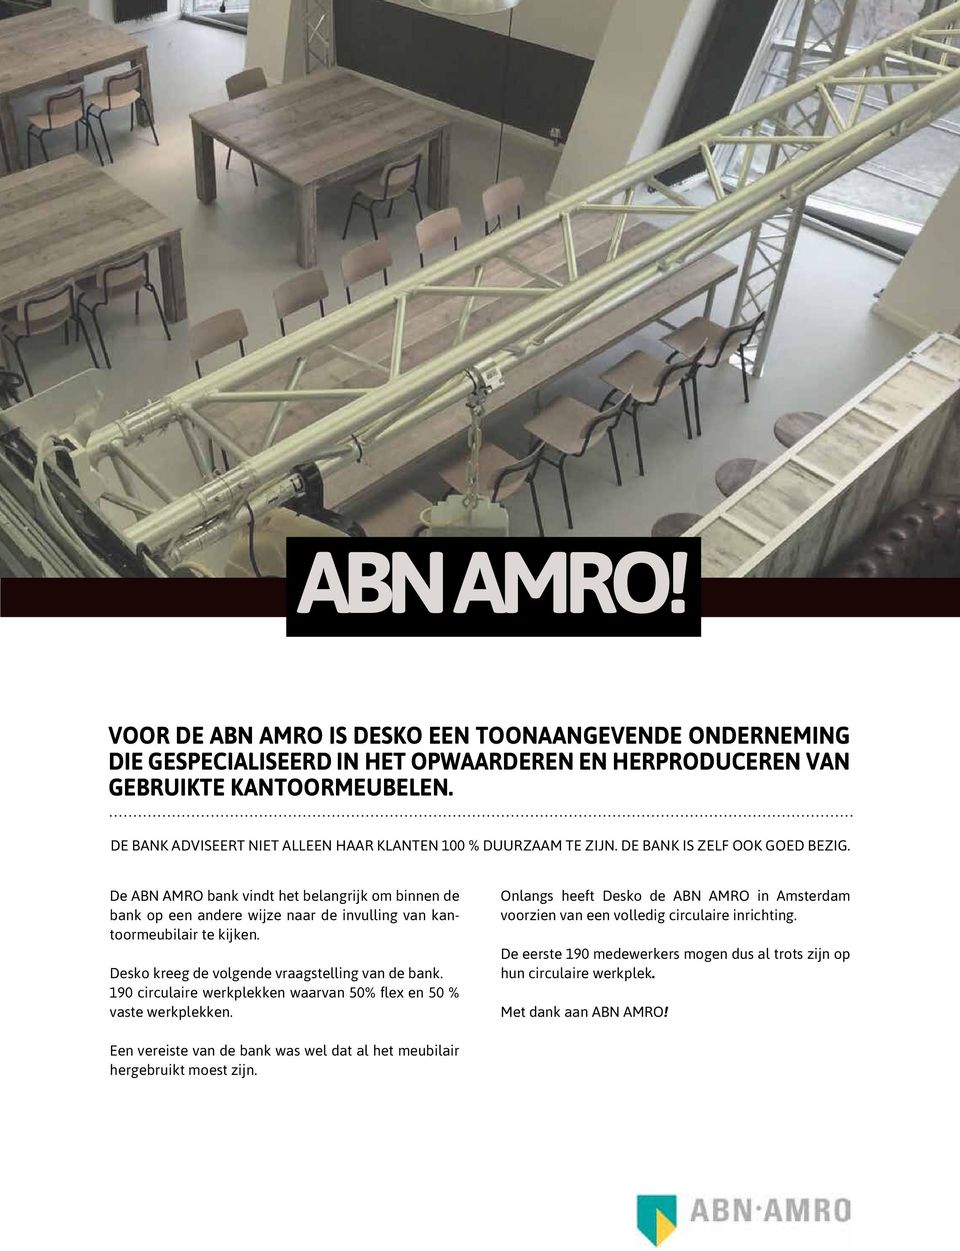 De ABN AMRO bank vindt het belangrijk om binnen de bank op een andere wijze naar de invulling van kantoormeubilair te kijken. Desko kreeg de volgende vraagstelling van de bank.